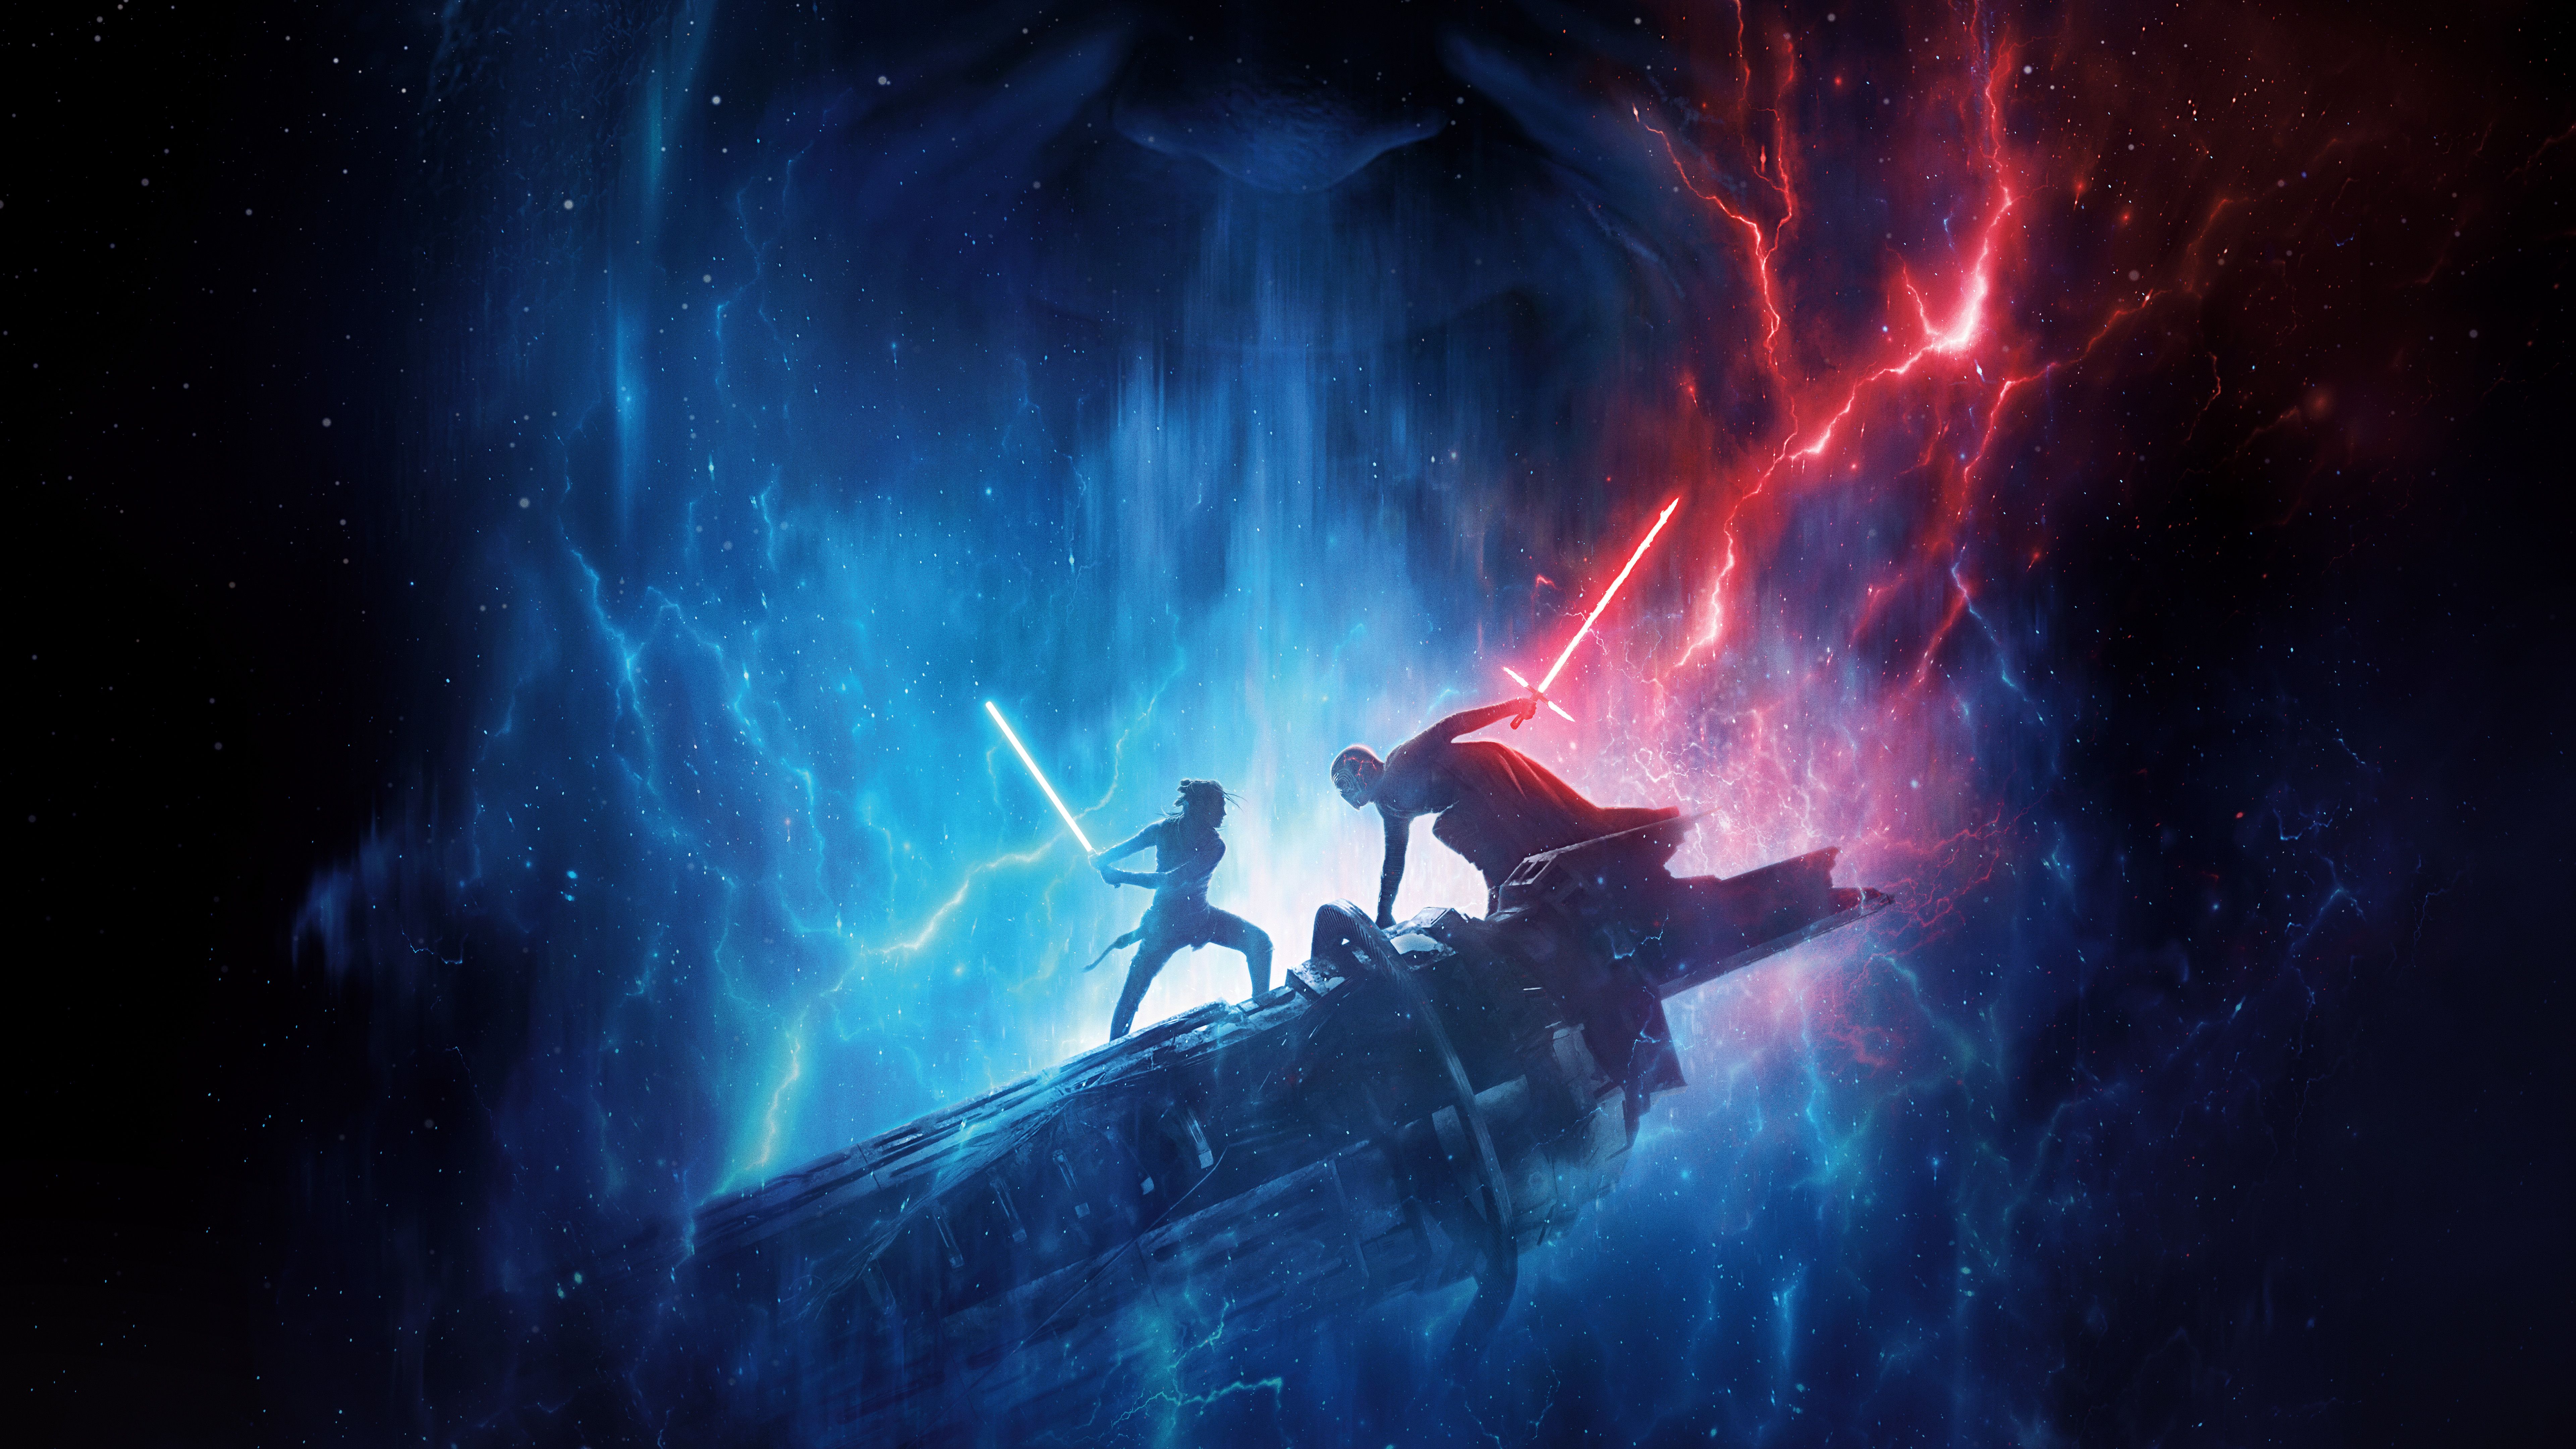 Star Wars The Rise of Skywalker 2019 4K 8K Wallpaper. HD